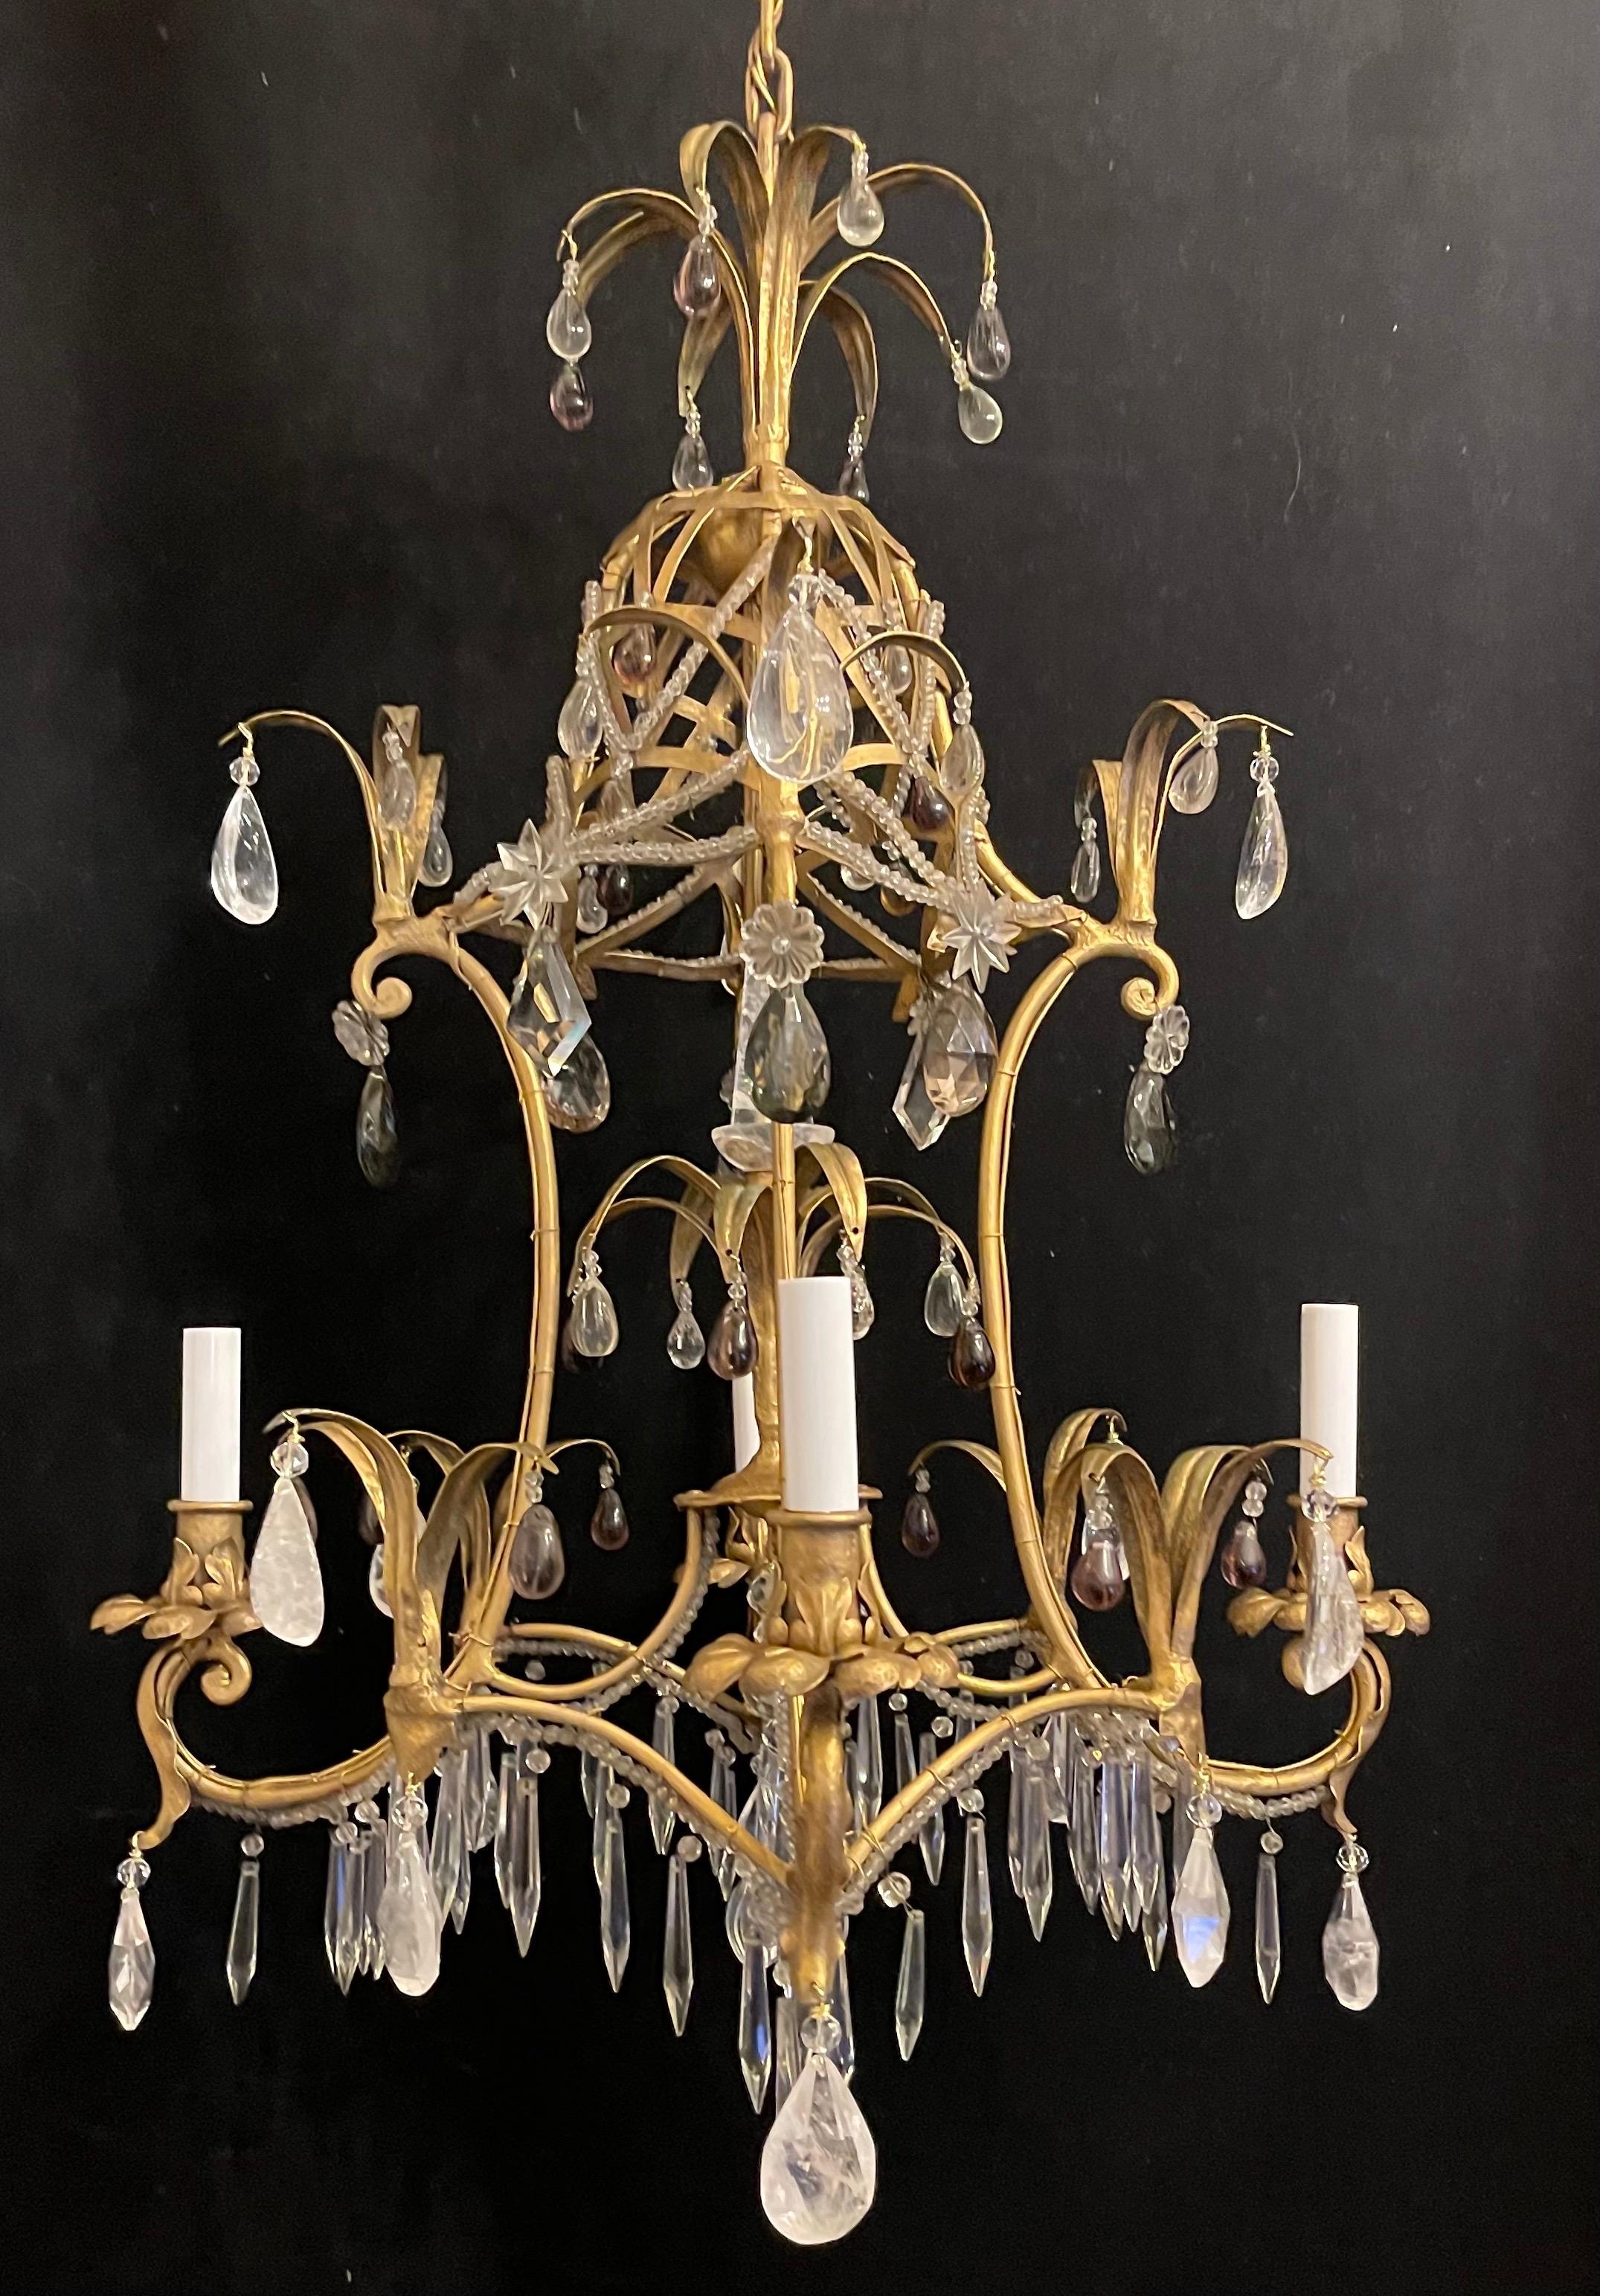 Magnifique panier doré de style Maison Bagues avec cristal de roche, améthyste et perles en forme de pagode, lustre à 4 chandeliers.
Ce luminaire a été recâblé et est livré avec une chaîne et du matériel de montage pour l'installation.